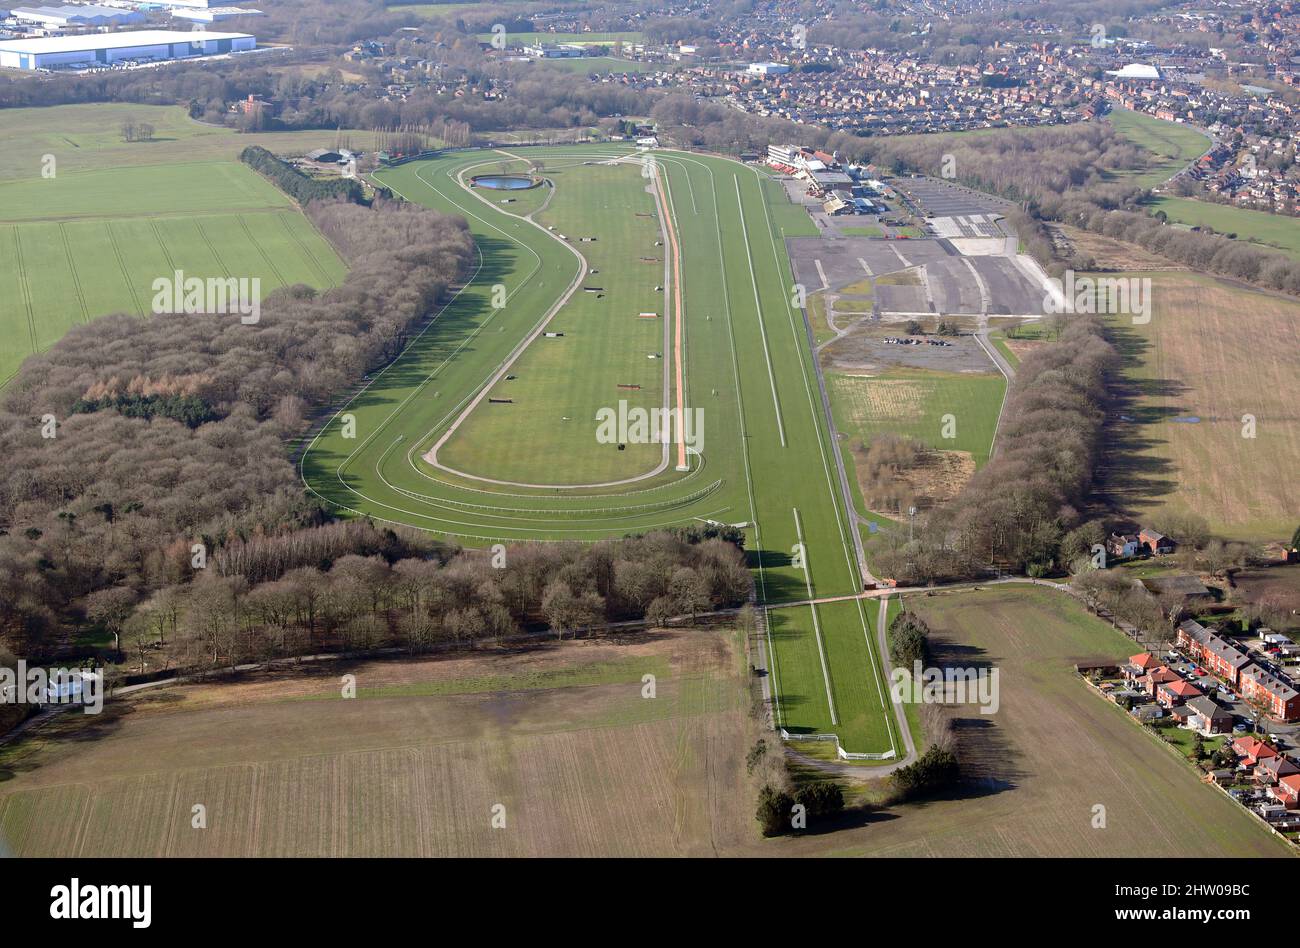 Vista aérea del hipódromo Haydock Park, Merseyside, noroeste de Inglaterra Foto de stock